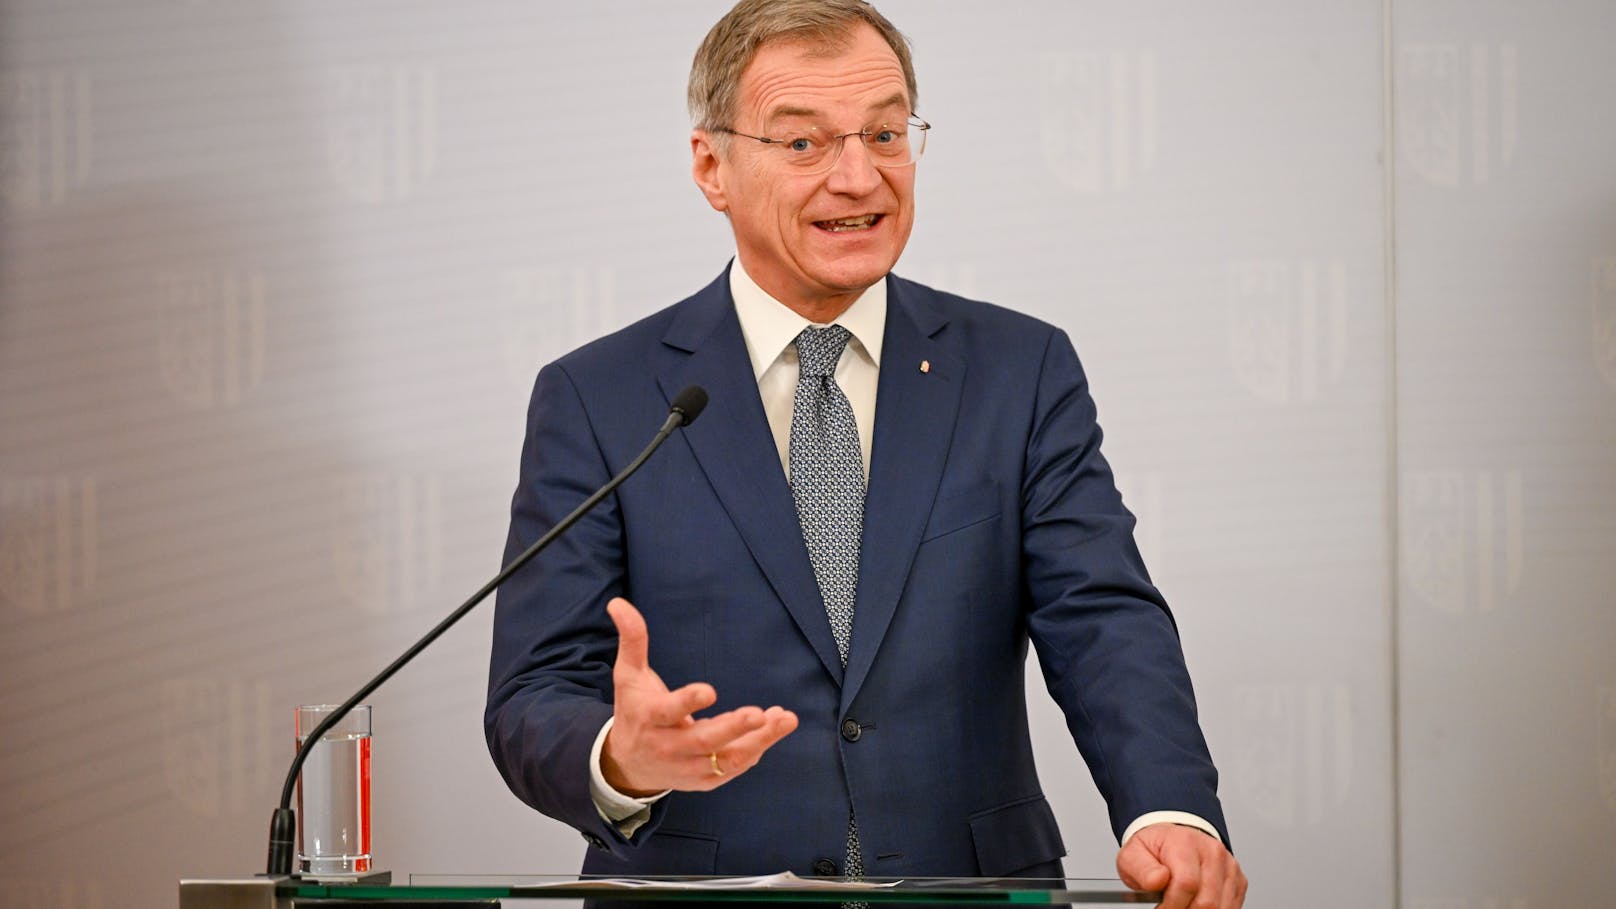 Oberösterreichs Landes-Chef&nbsp; Stelzer befürwortet die Bezahlkarte für Asylwerber.